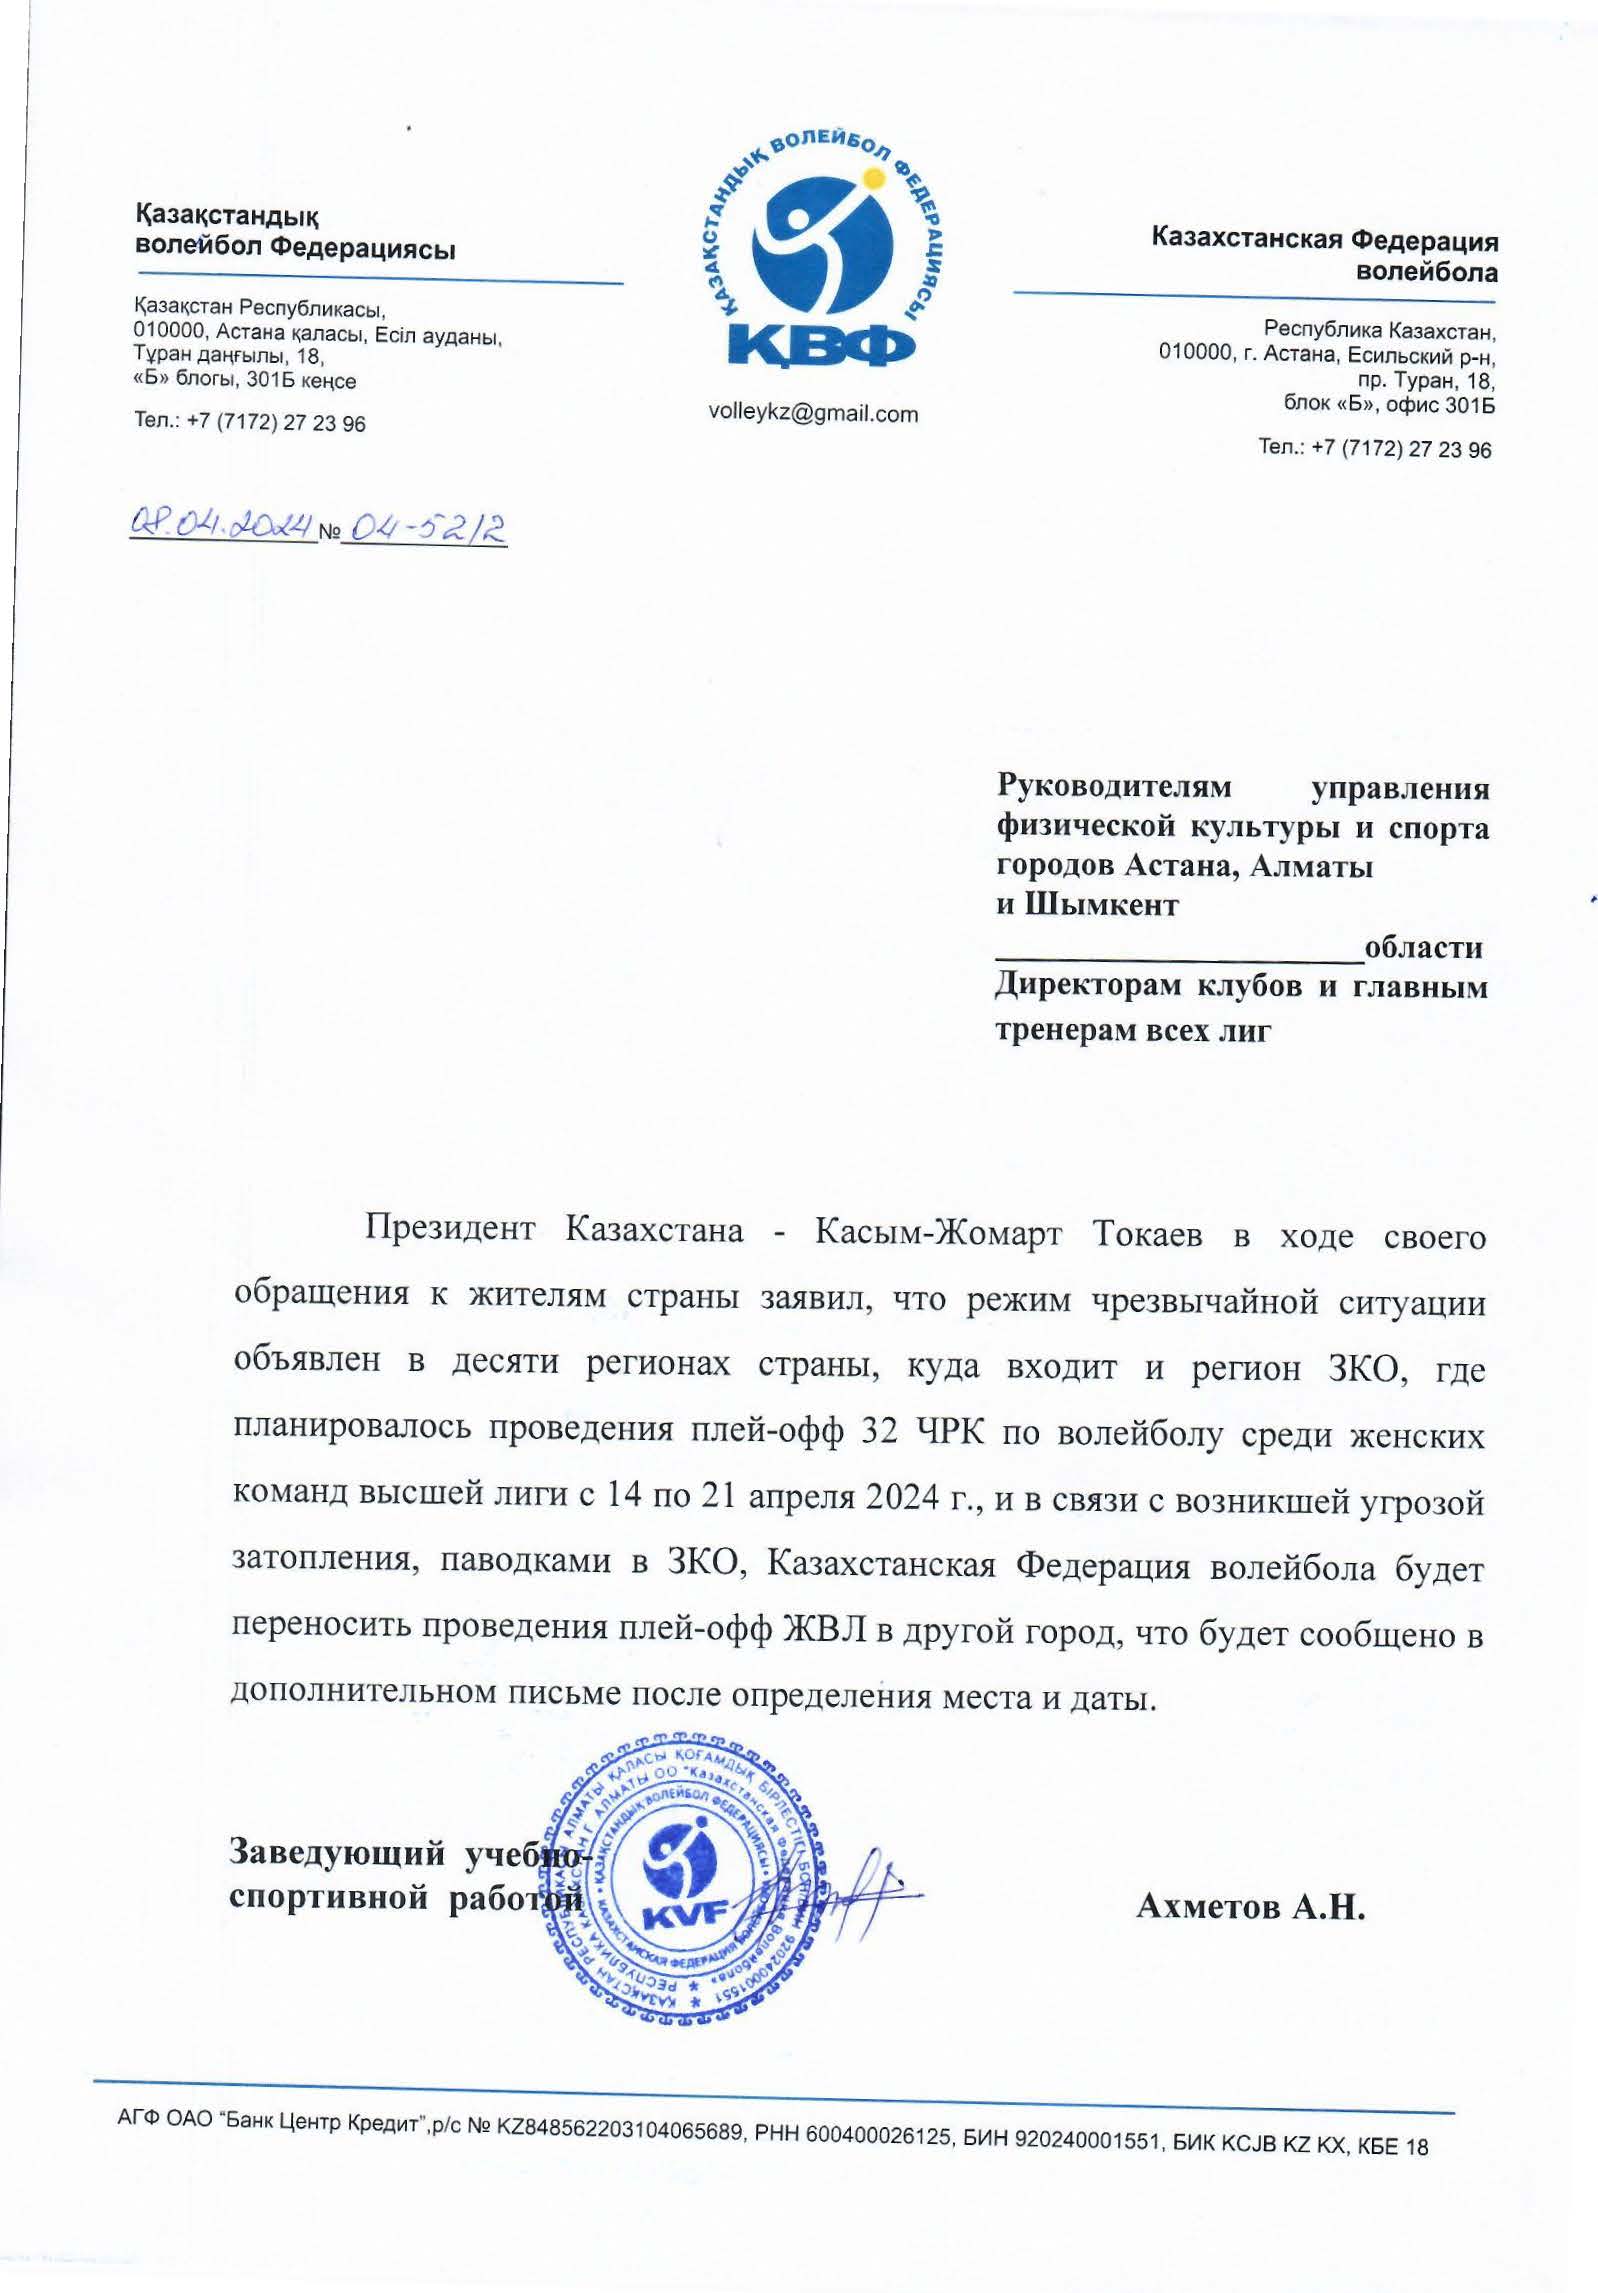 Письмо клубам по отмене 5 тура ЖВЛ 32 ЧРК 2024 г. в г. Уральск.jpg